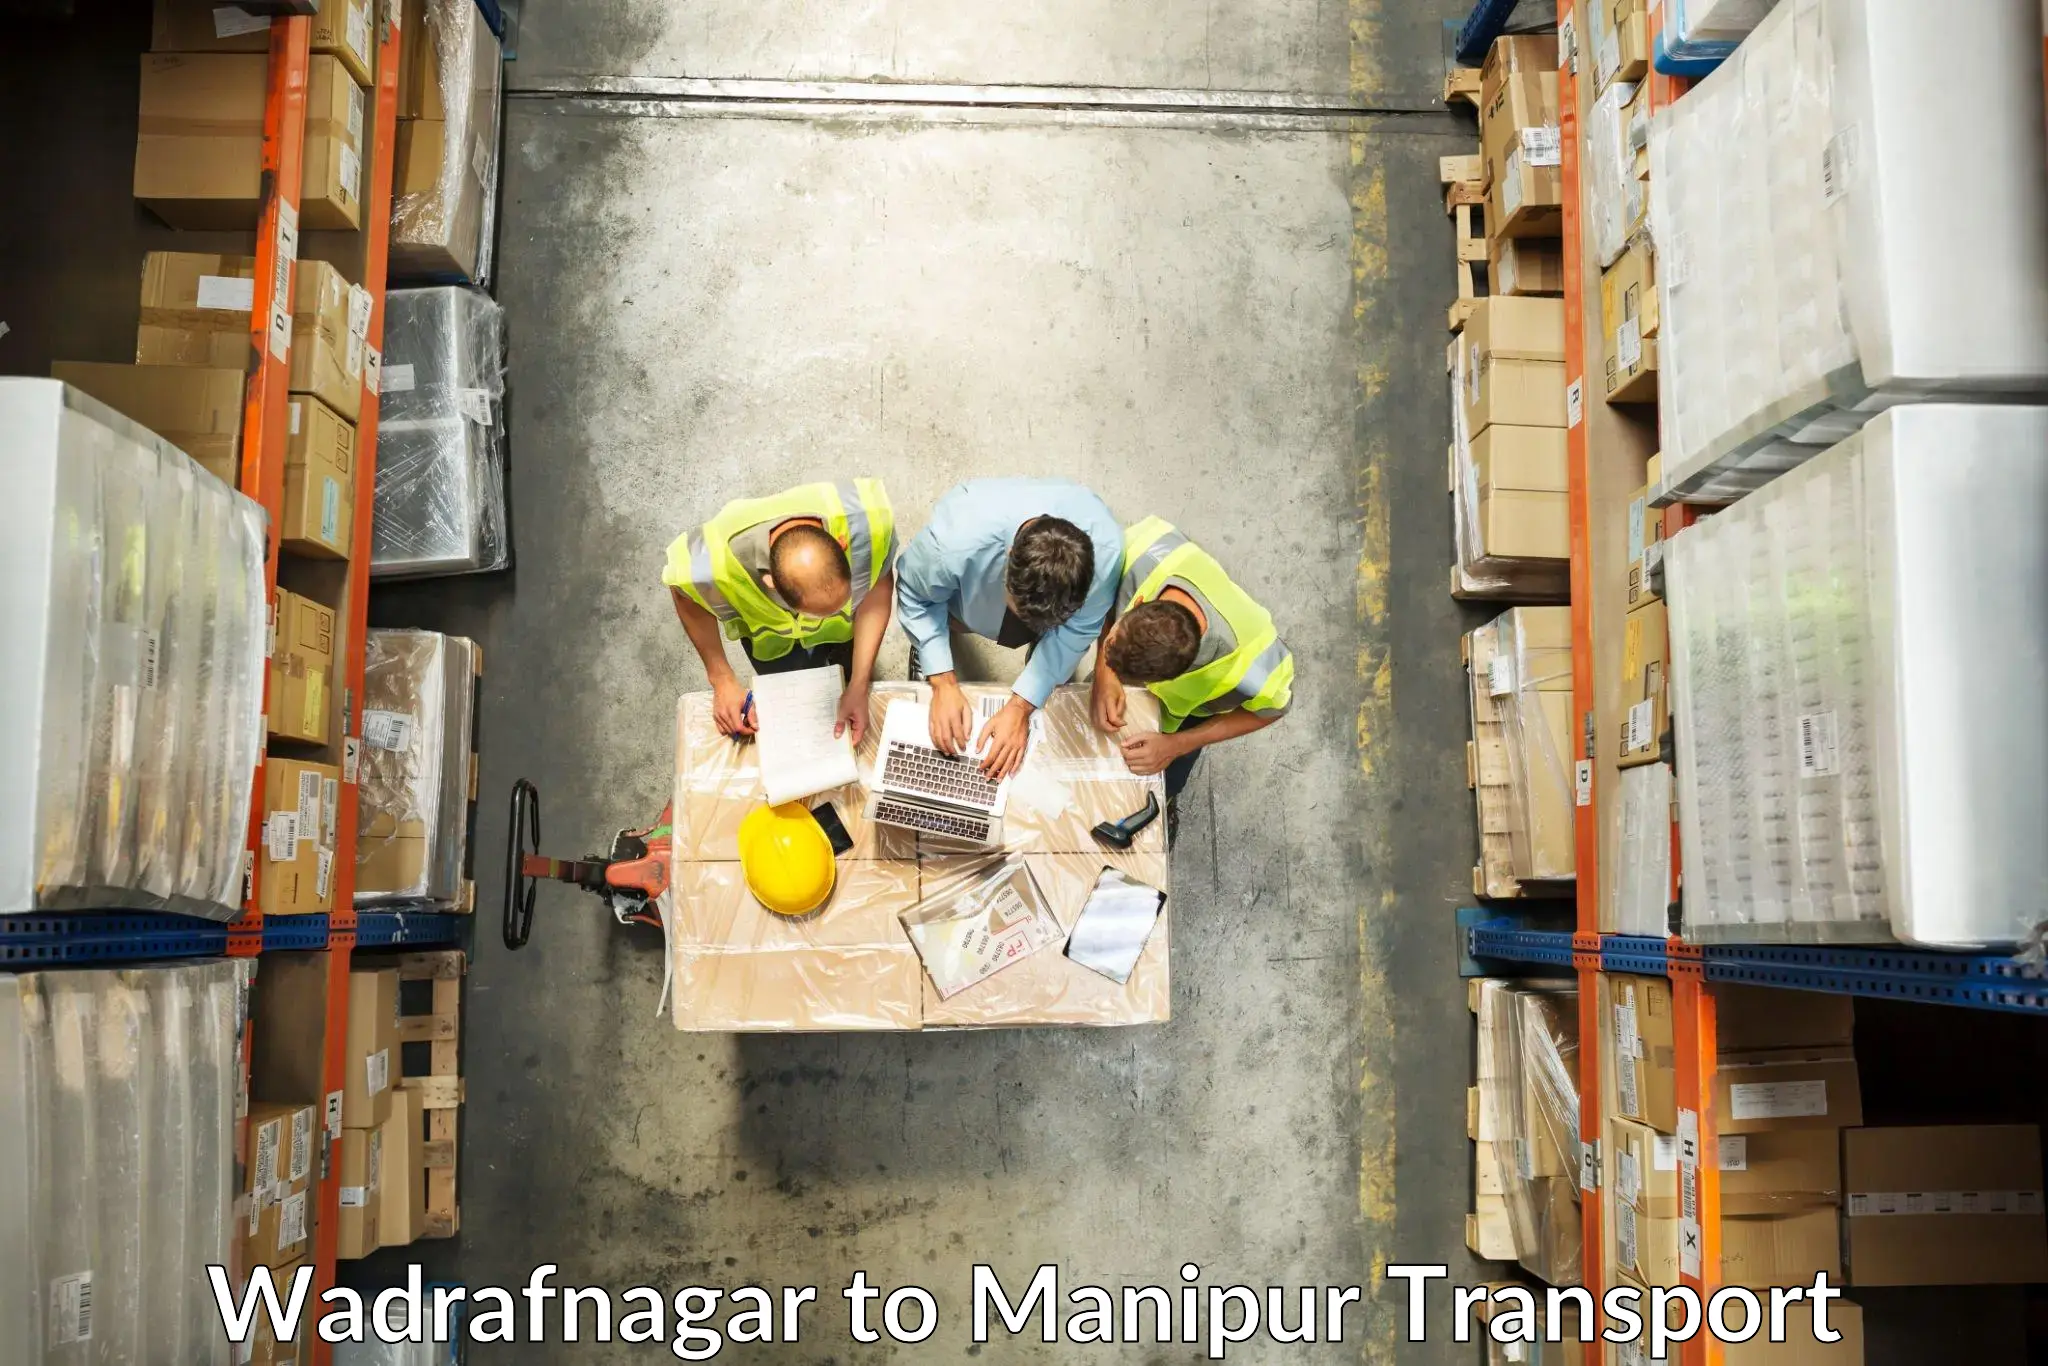 Commercial transport service Wadrafnagar to Senapati